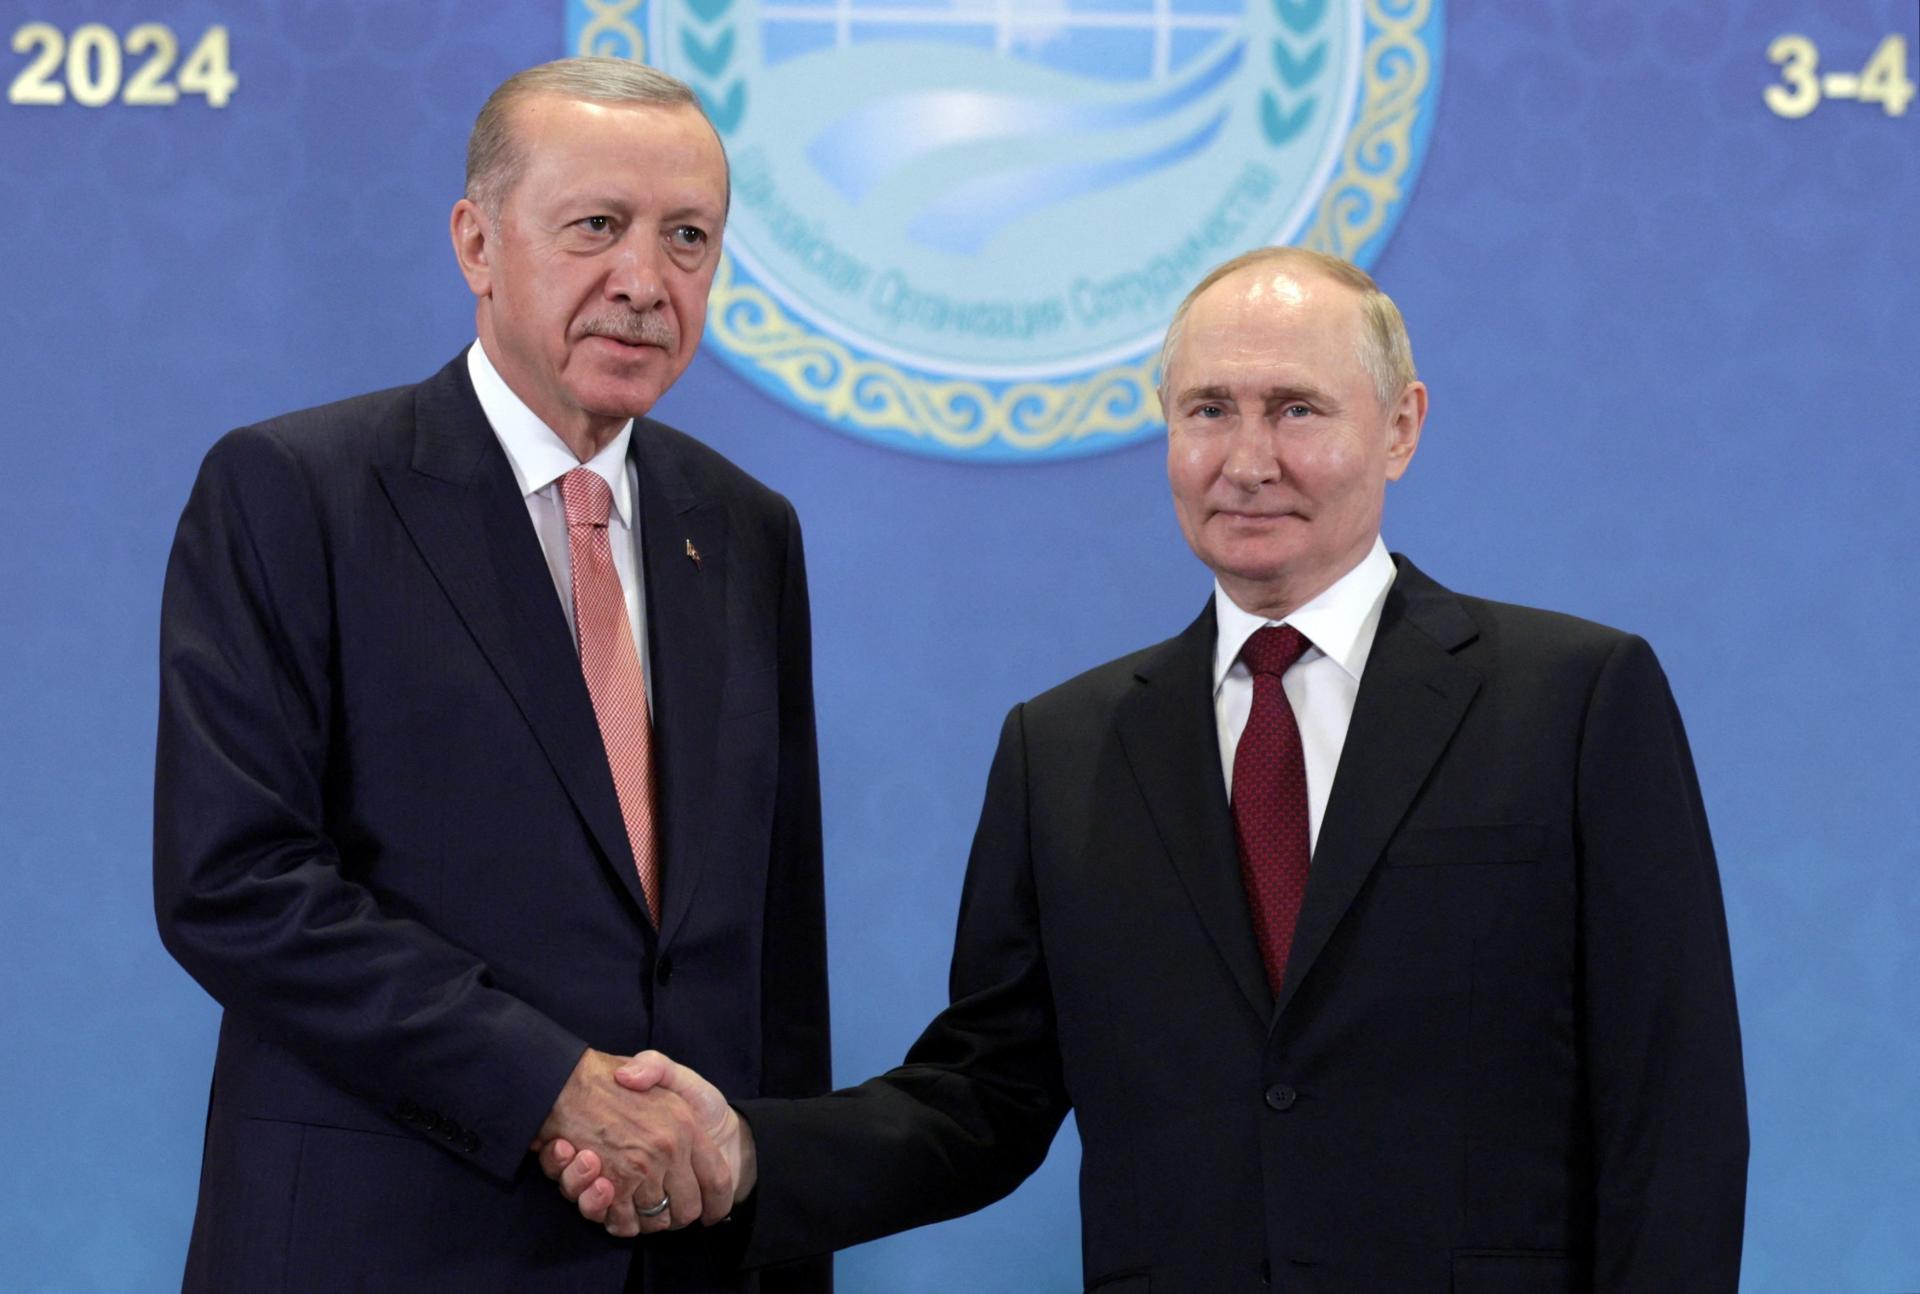 Ankara ako základ mierových rokovaní. Putin jednal v Kazachstane s Erdoganom aj o situácii na Ukrajine